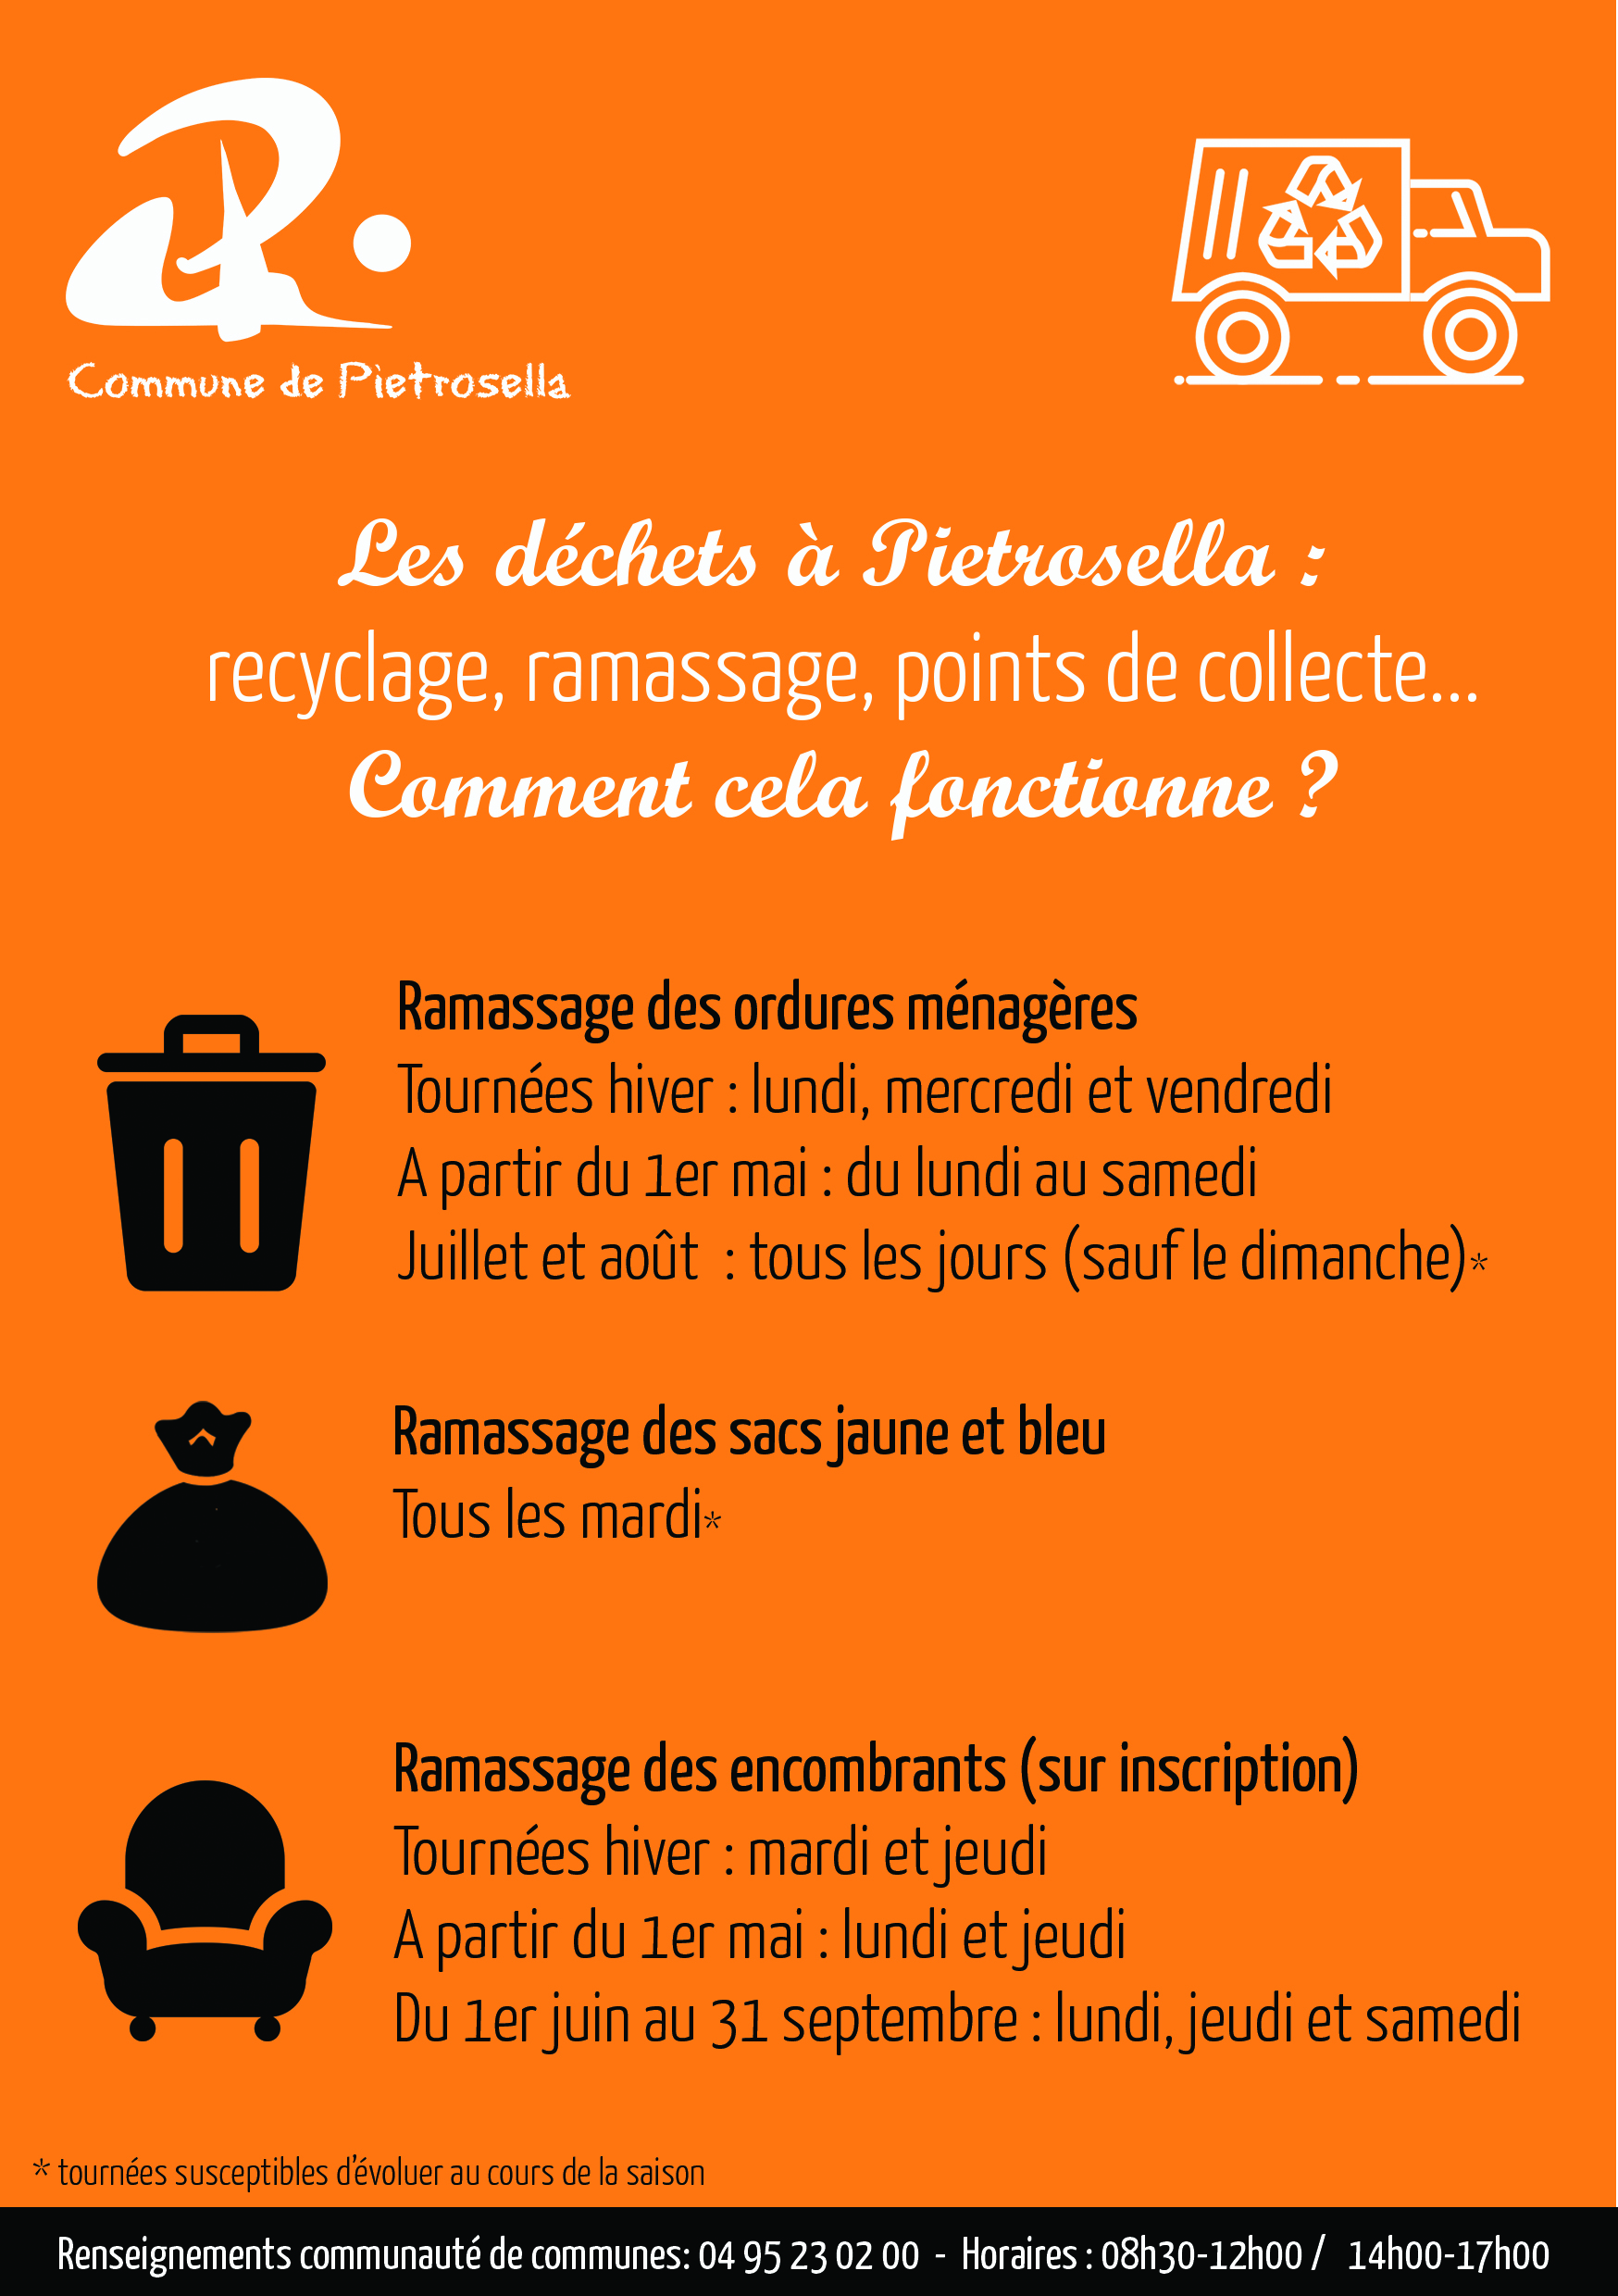 Ramassage des déchets, encombrants, recyclage : tout savoir sur les déchets à Pietrosella